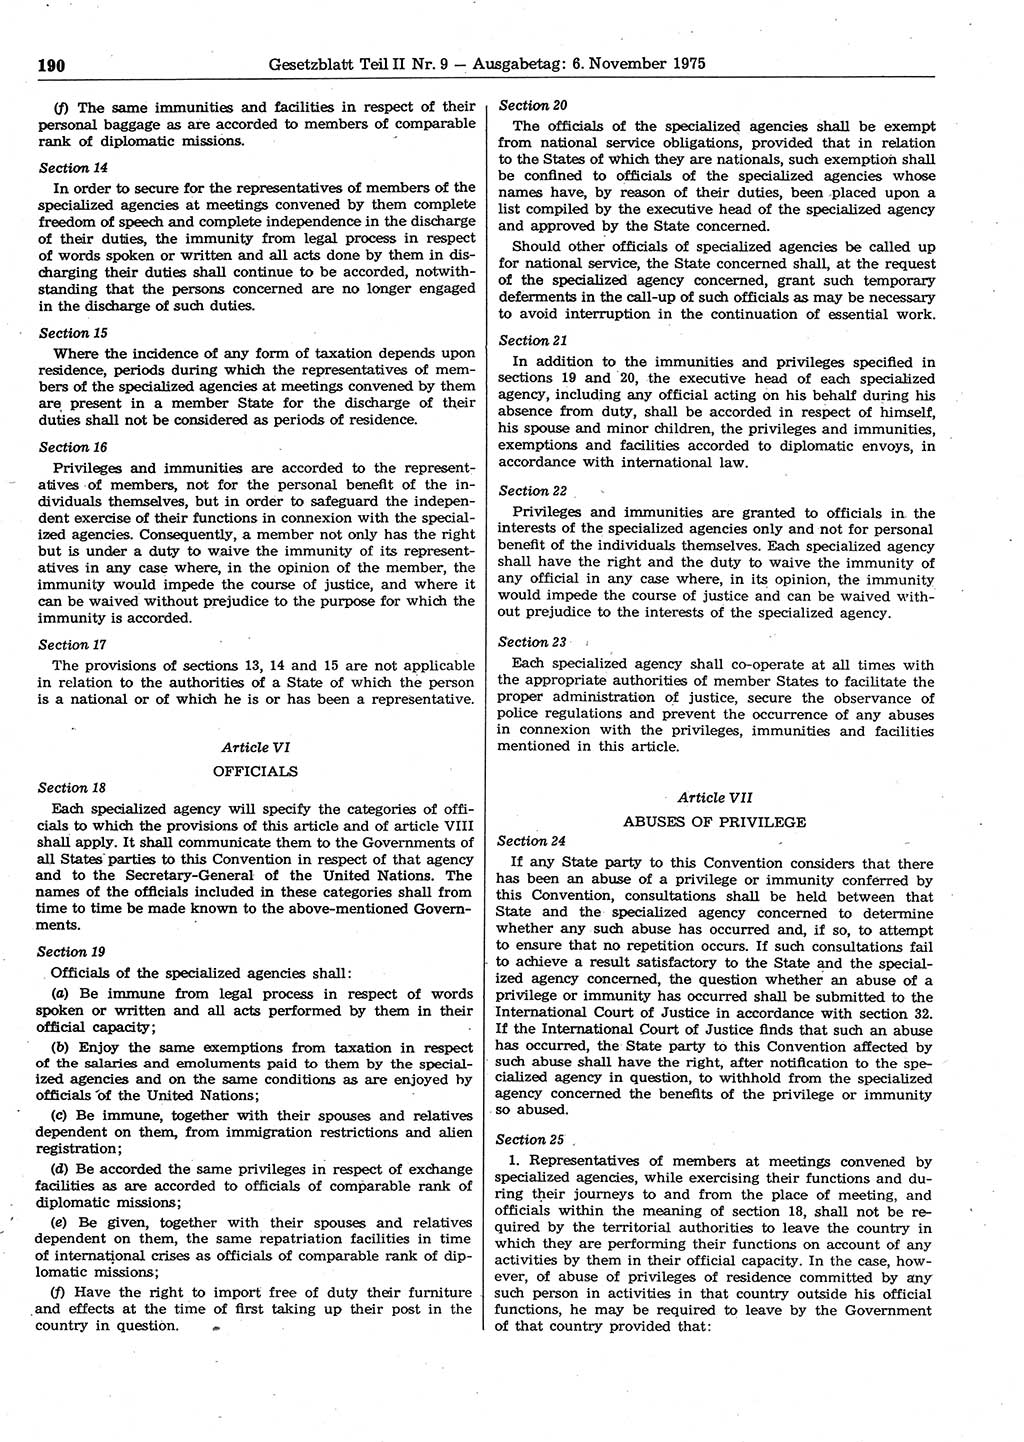 Gesetzblatt (GBl.) der Deutschen Demokratischen Republik (DDR) Teil ⅠⅠ 1975, Seite 190 (GBl. DDR ⅠⅠ 1975, S. 190)